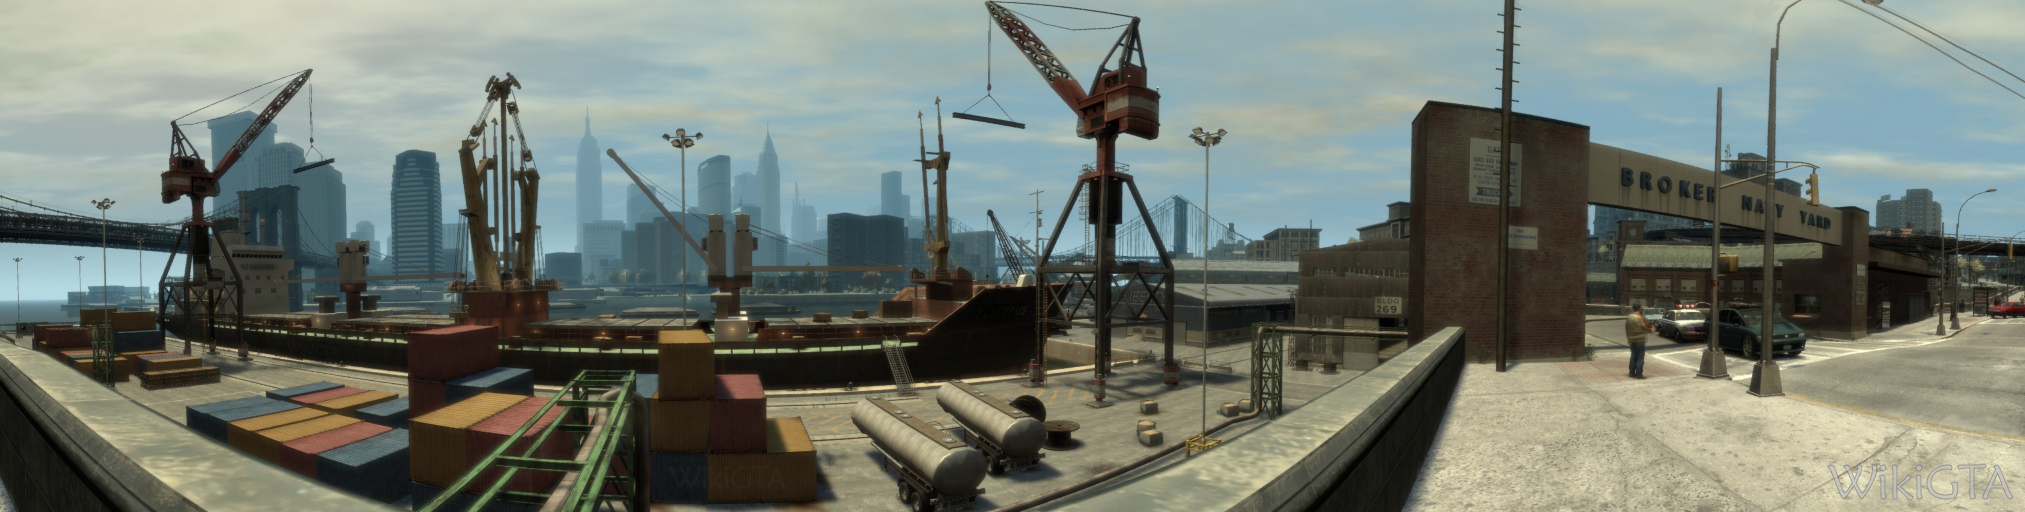 Broker Navy Yard-panorama.jpg